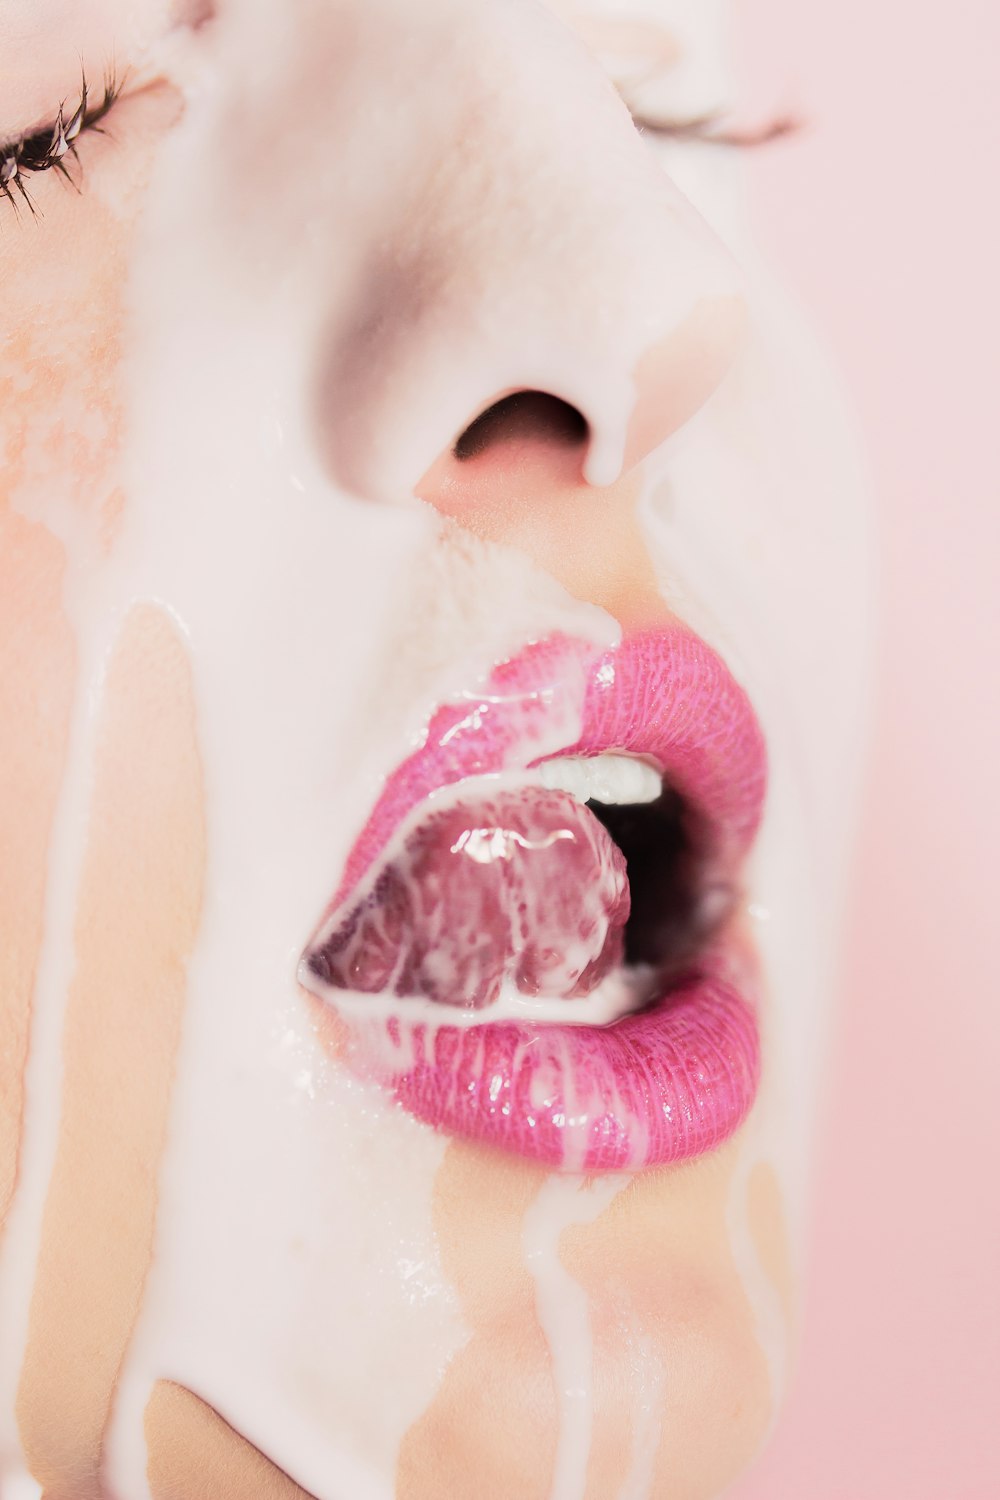 eine Nahaufnahme des Gesichts einer Frau mit rosa Lippenstift